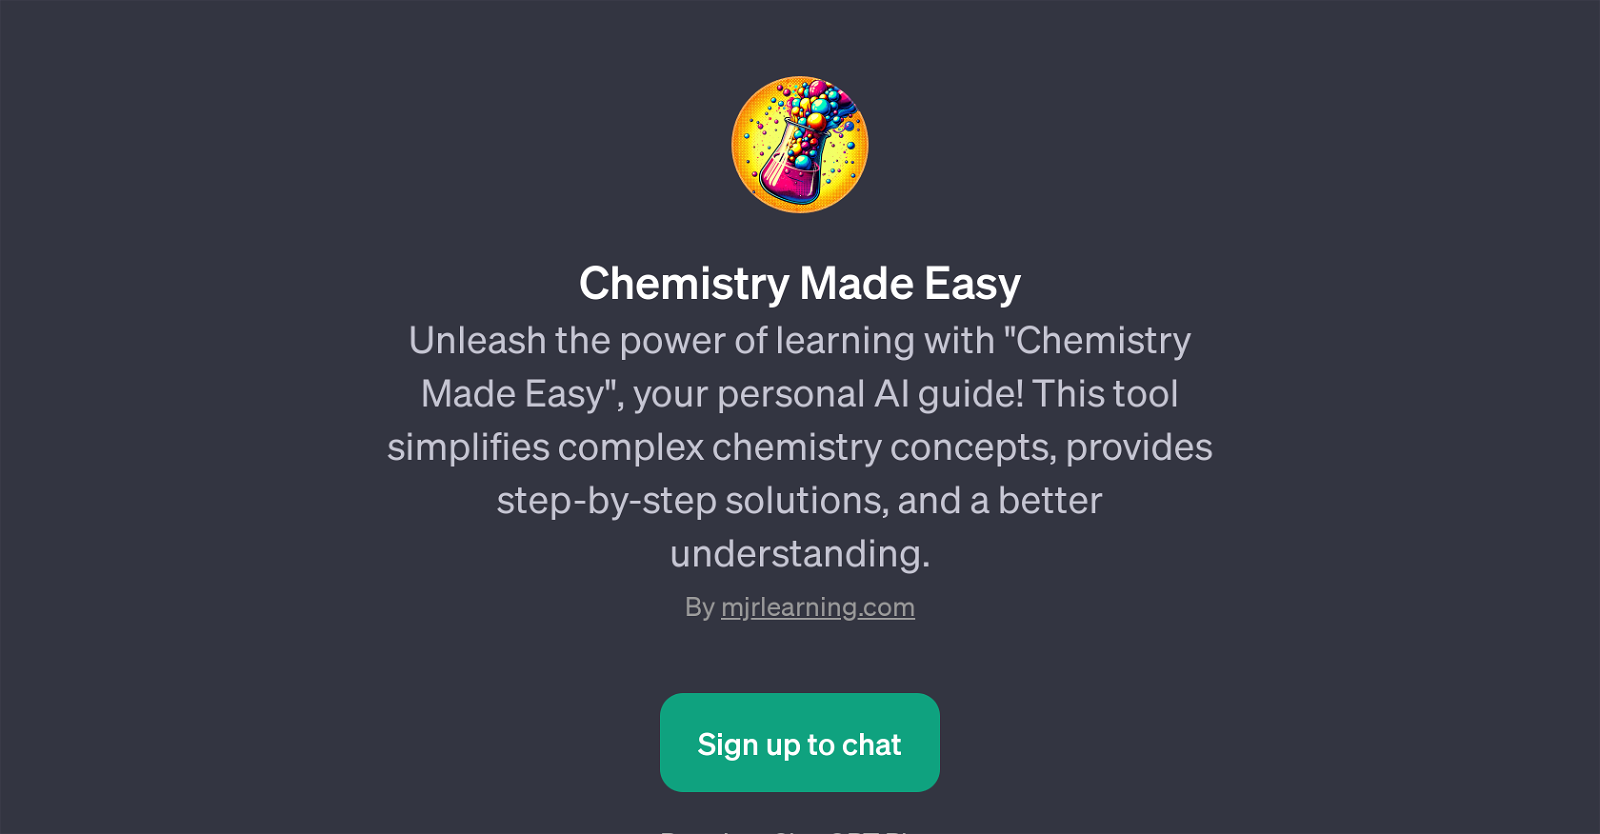 Chemistry Made Easy website